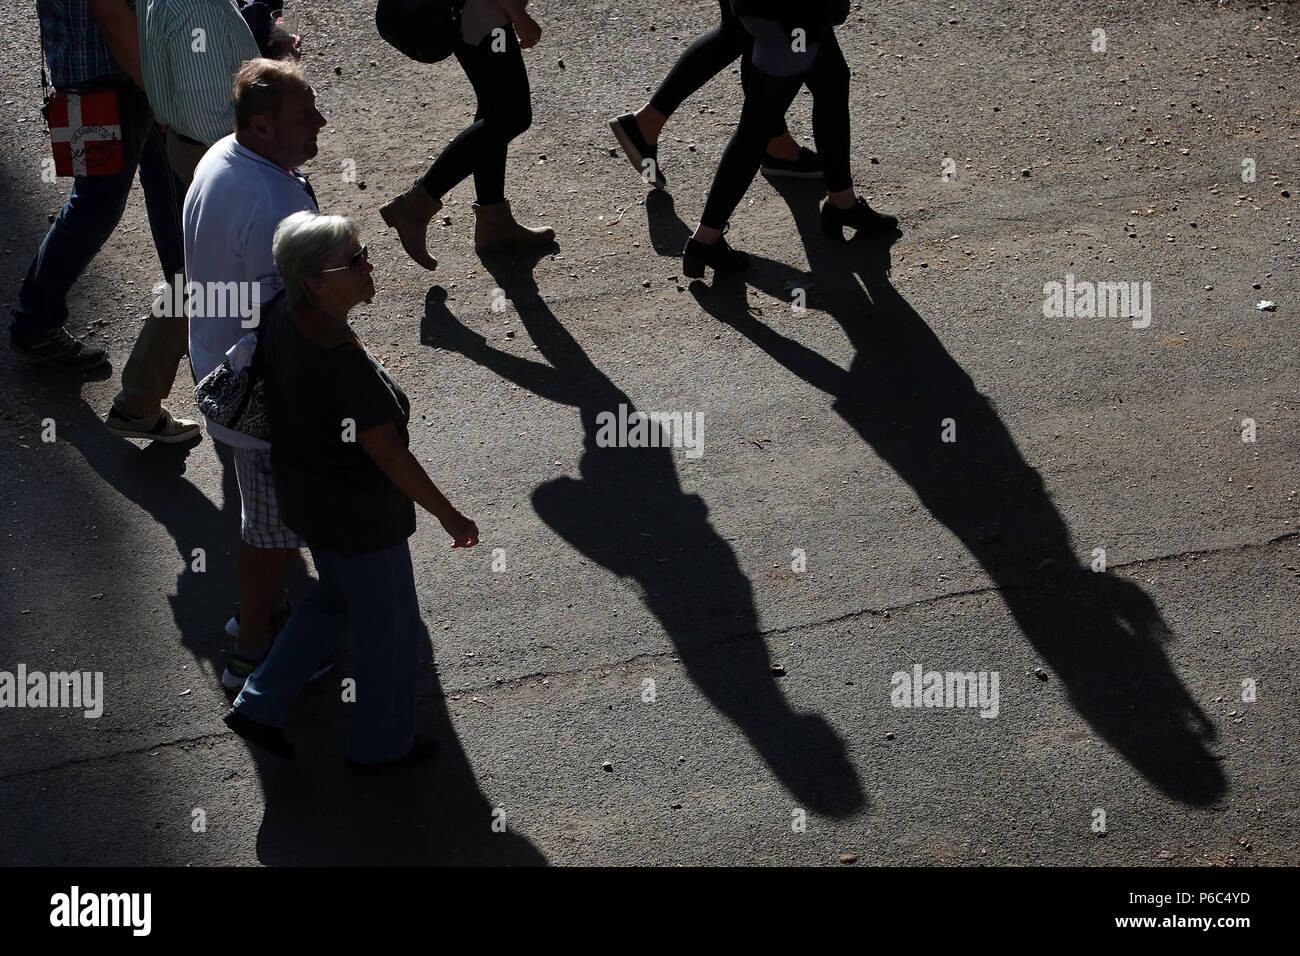 Dresde, les gens jettent une ombre sur le terrain Banque D'Images